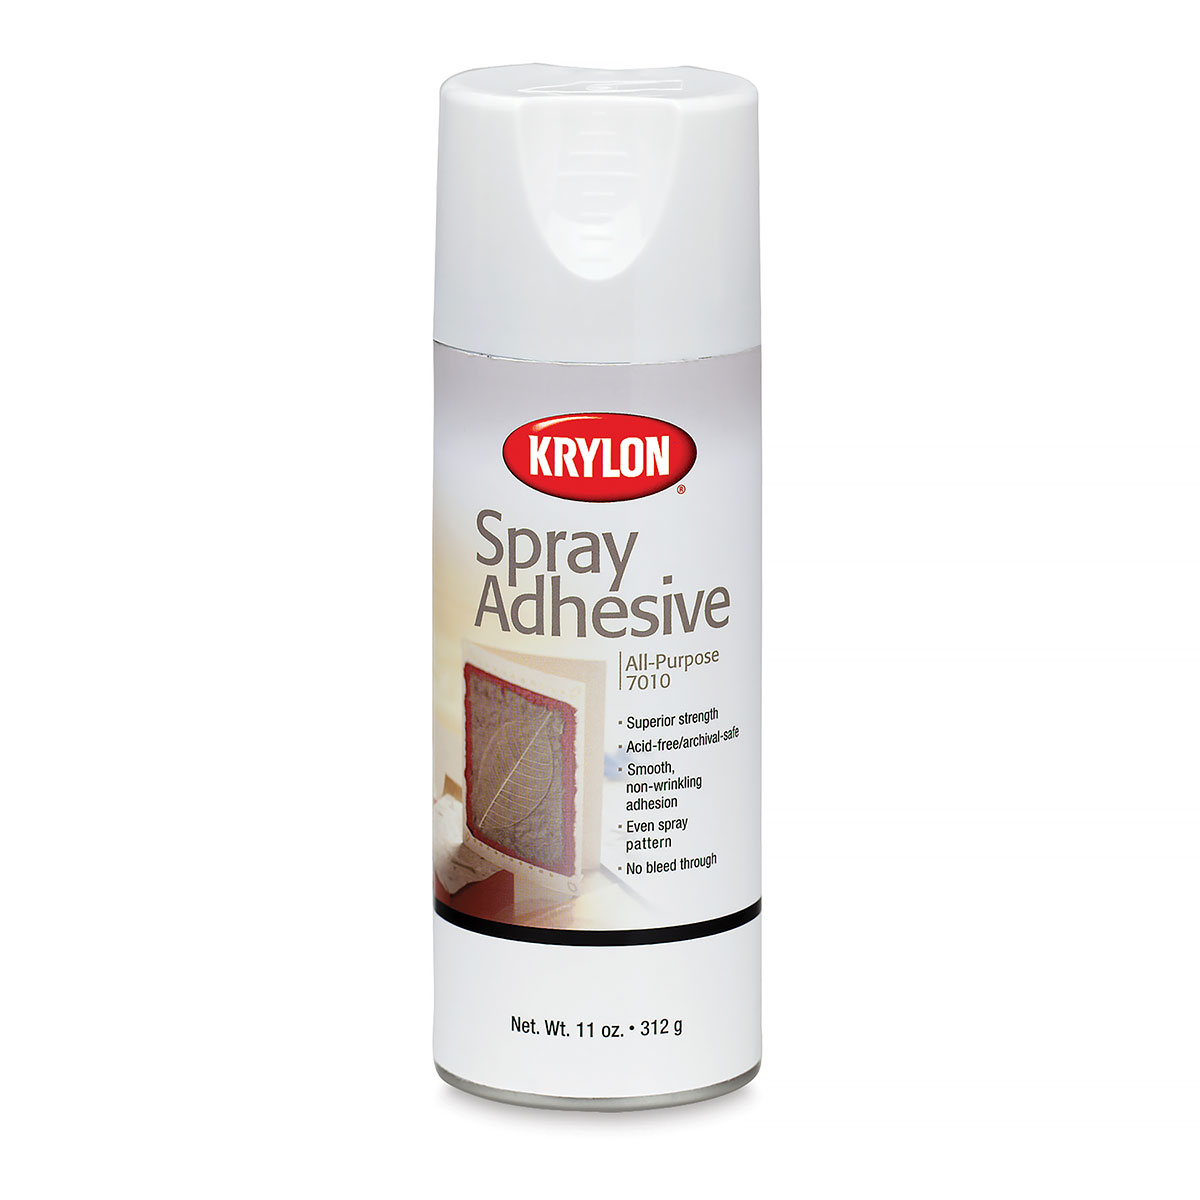 All-Purpose Spray Adhesive